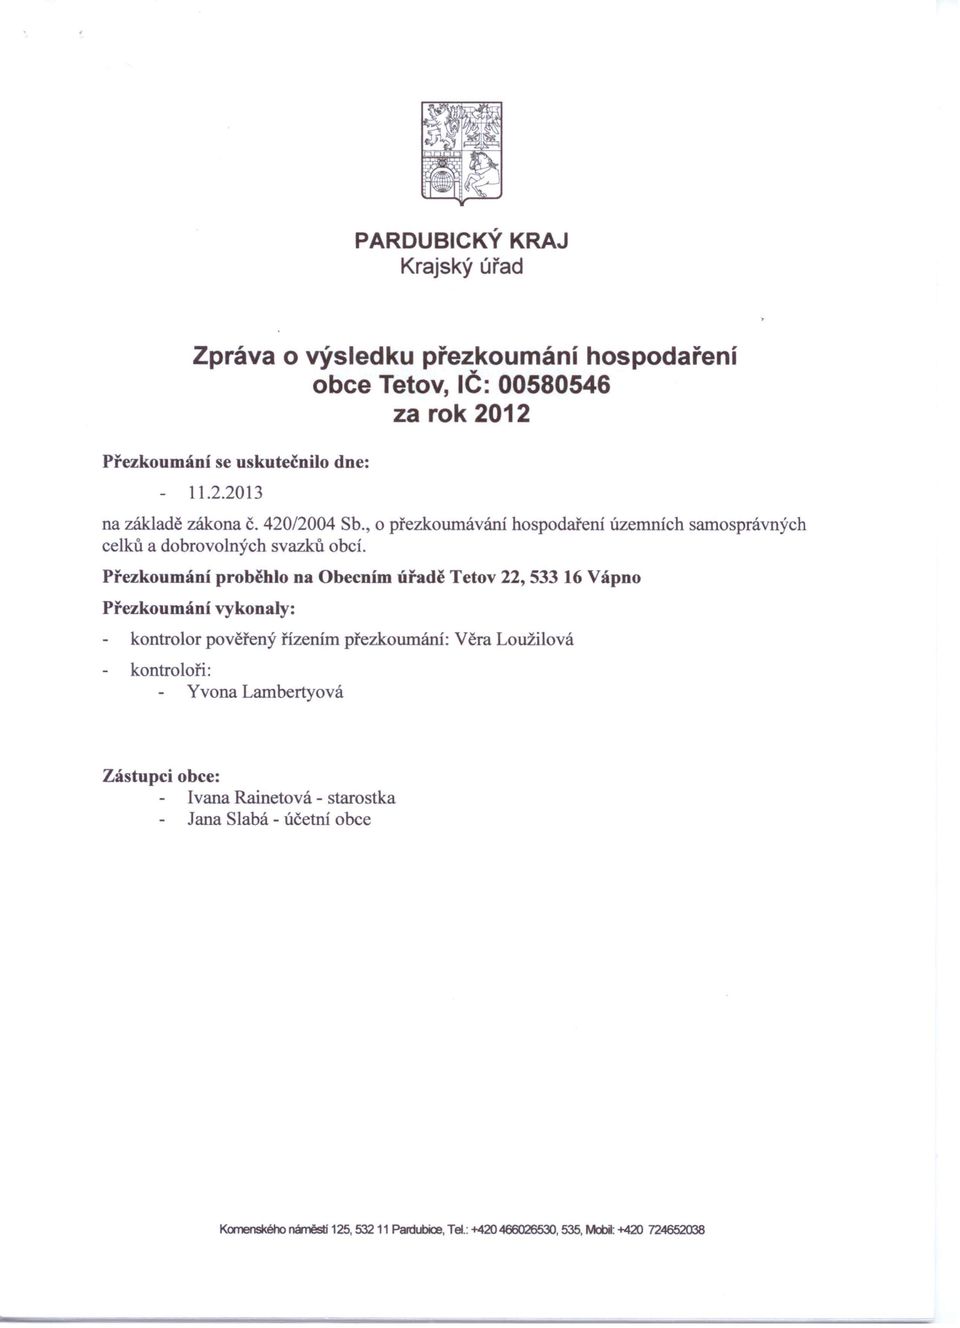 Přezkoumání Přezkoumání proběhlo na Obecním úřadě Tetov 22, 53316 Vápno vykonaly: kontrolor pověřený řízením přezkoumání: kontroloři: Yvona